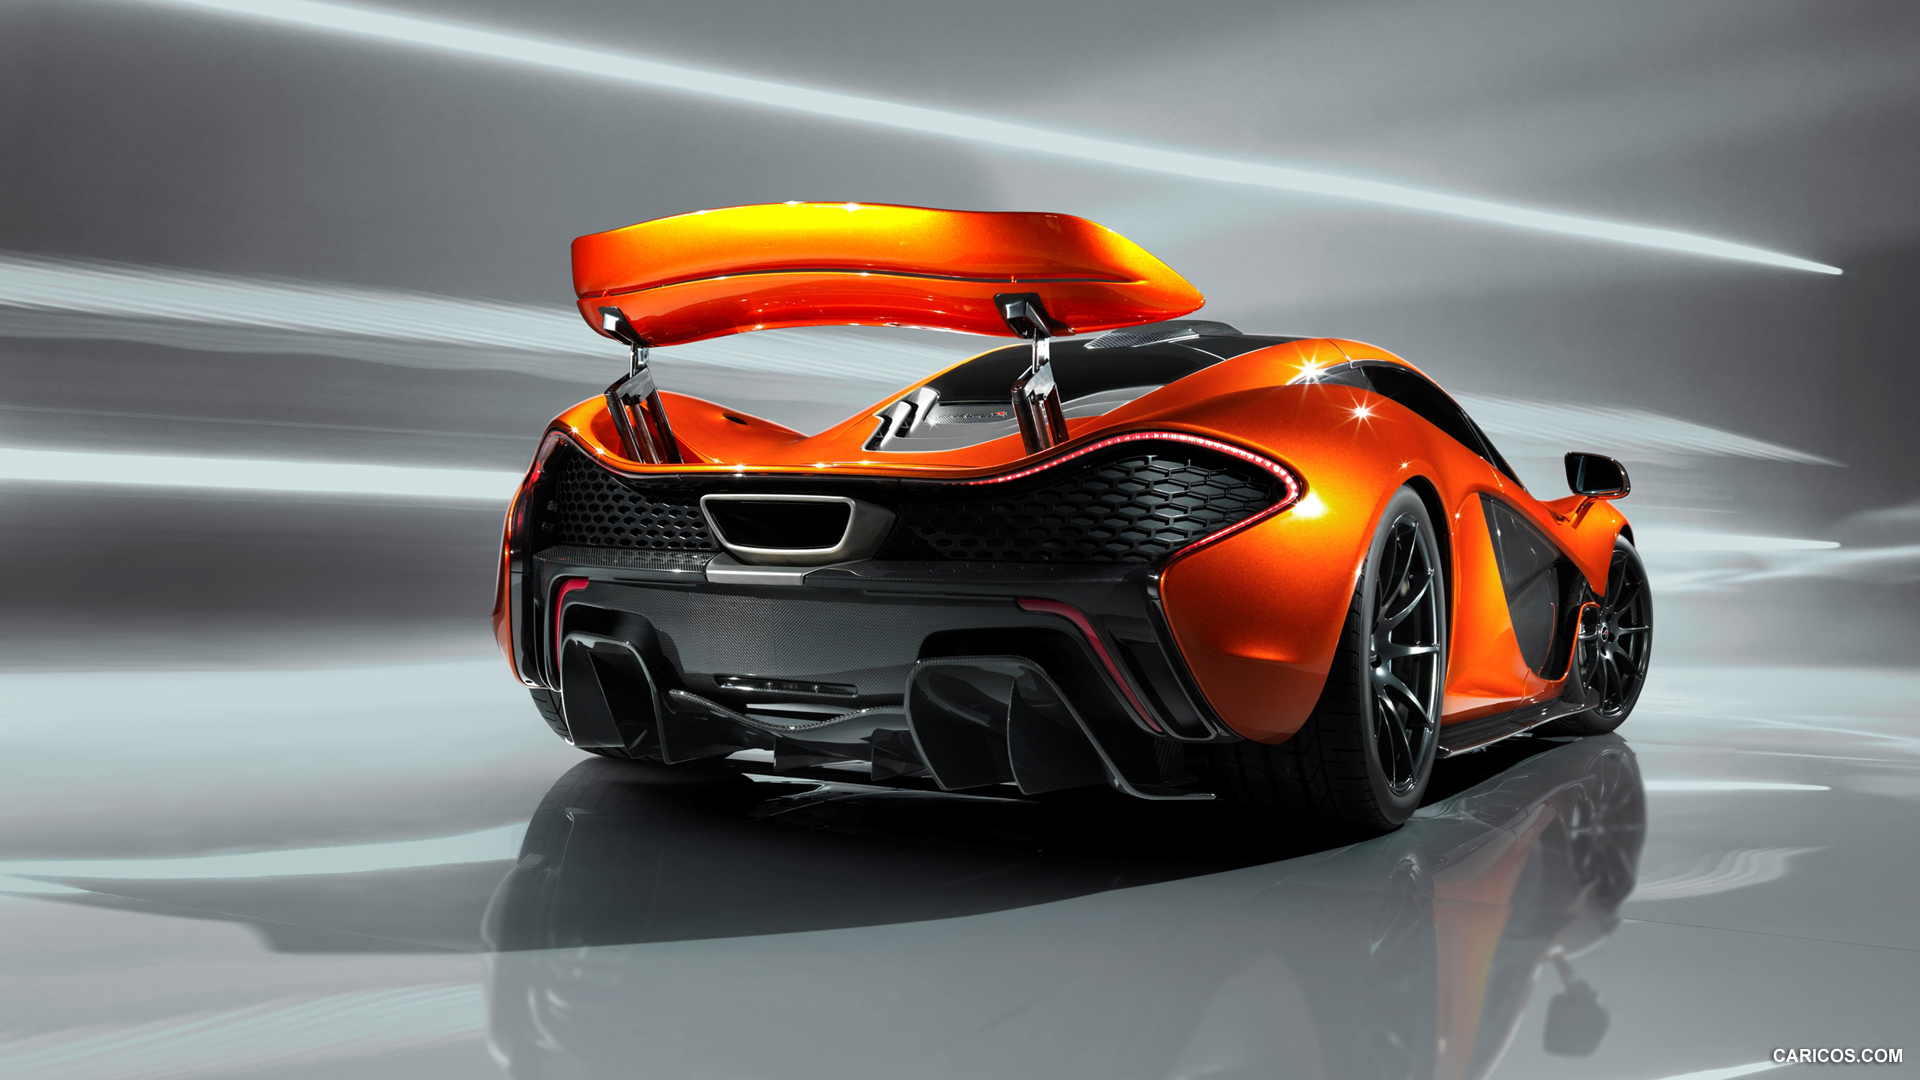 2012 McLaren P1 Concept  - Spoiler, #4 of 15